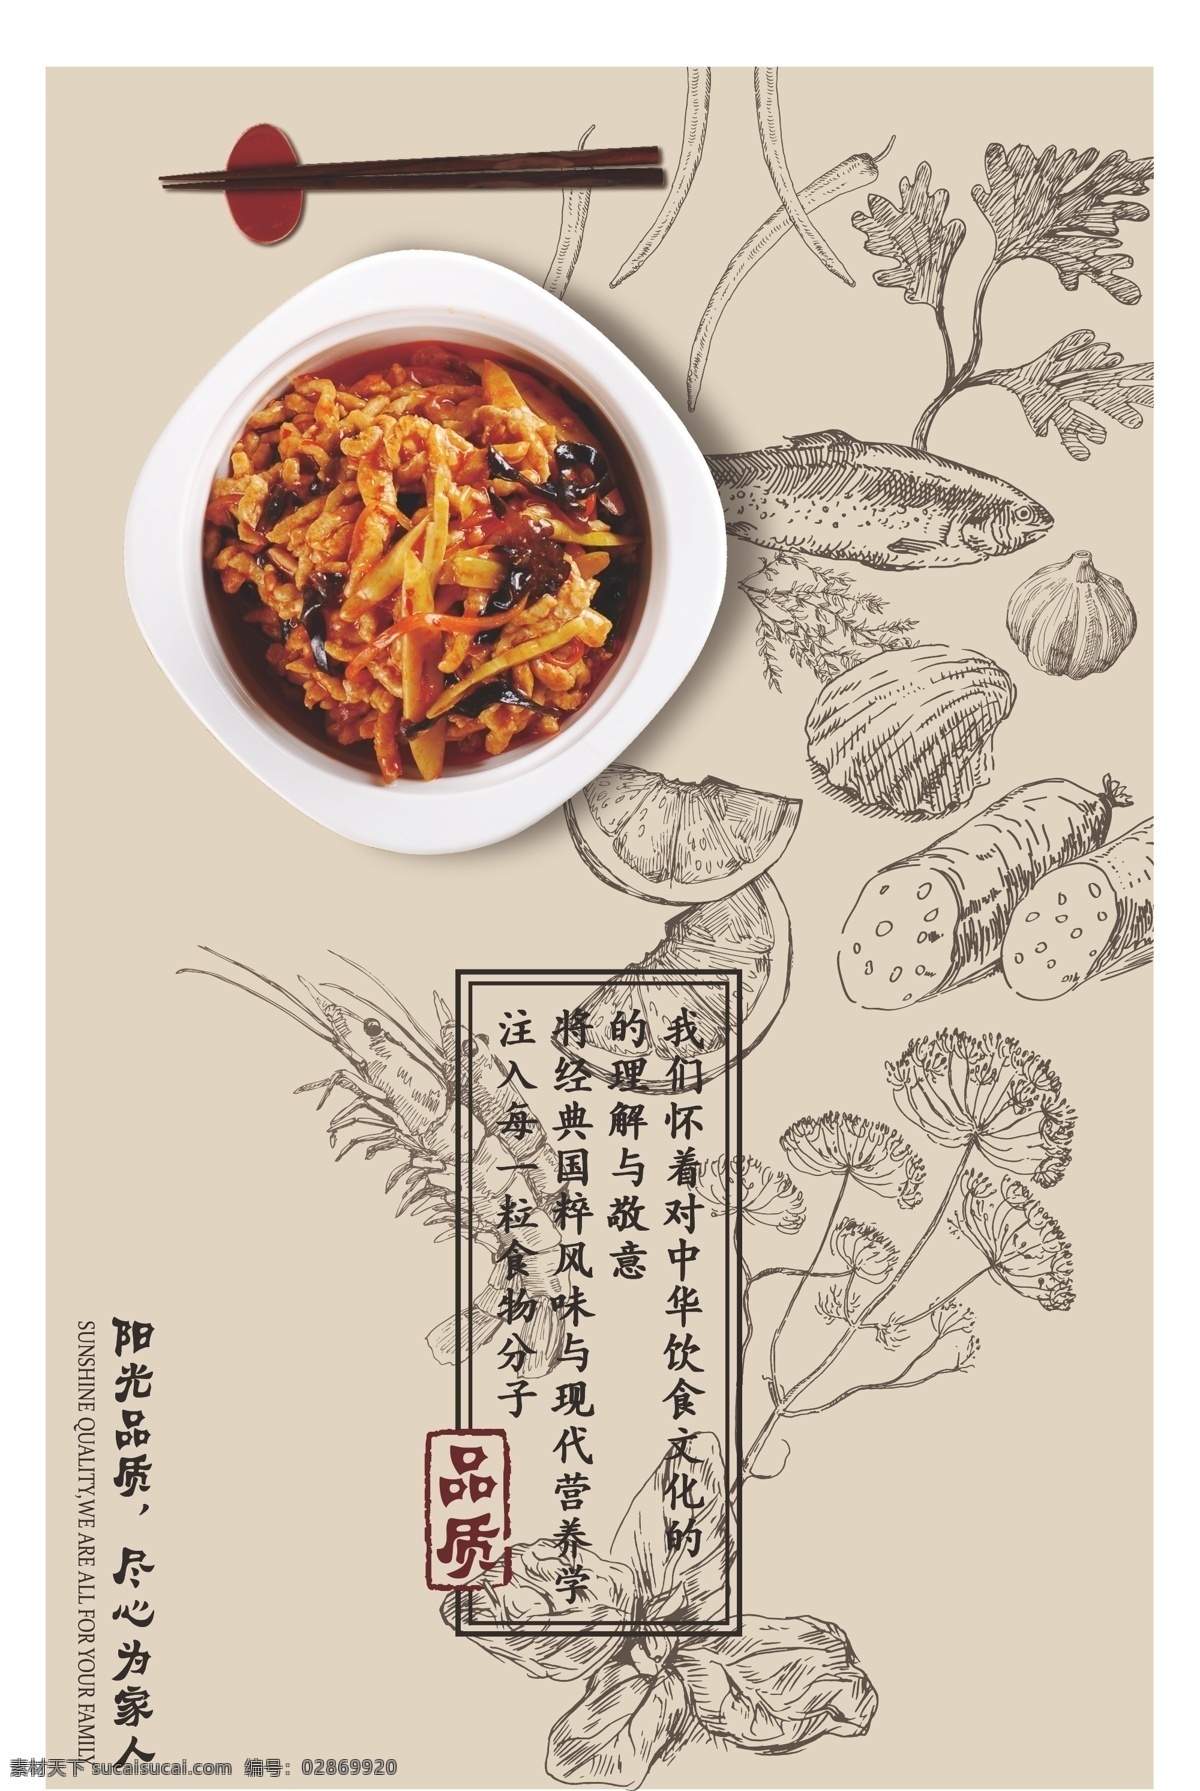 中国 风 高端 餐饮 海报 中国风 酒店 墙画 美食 展板 川菜 手绘